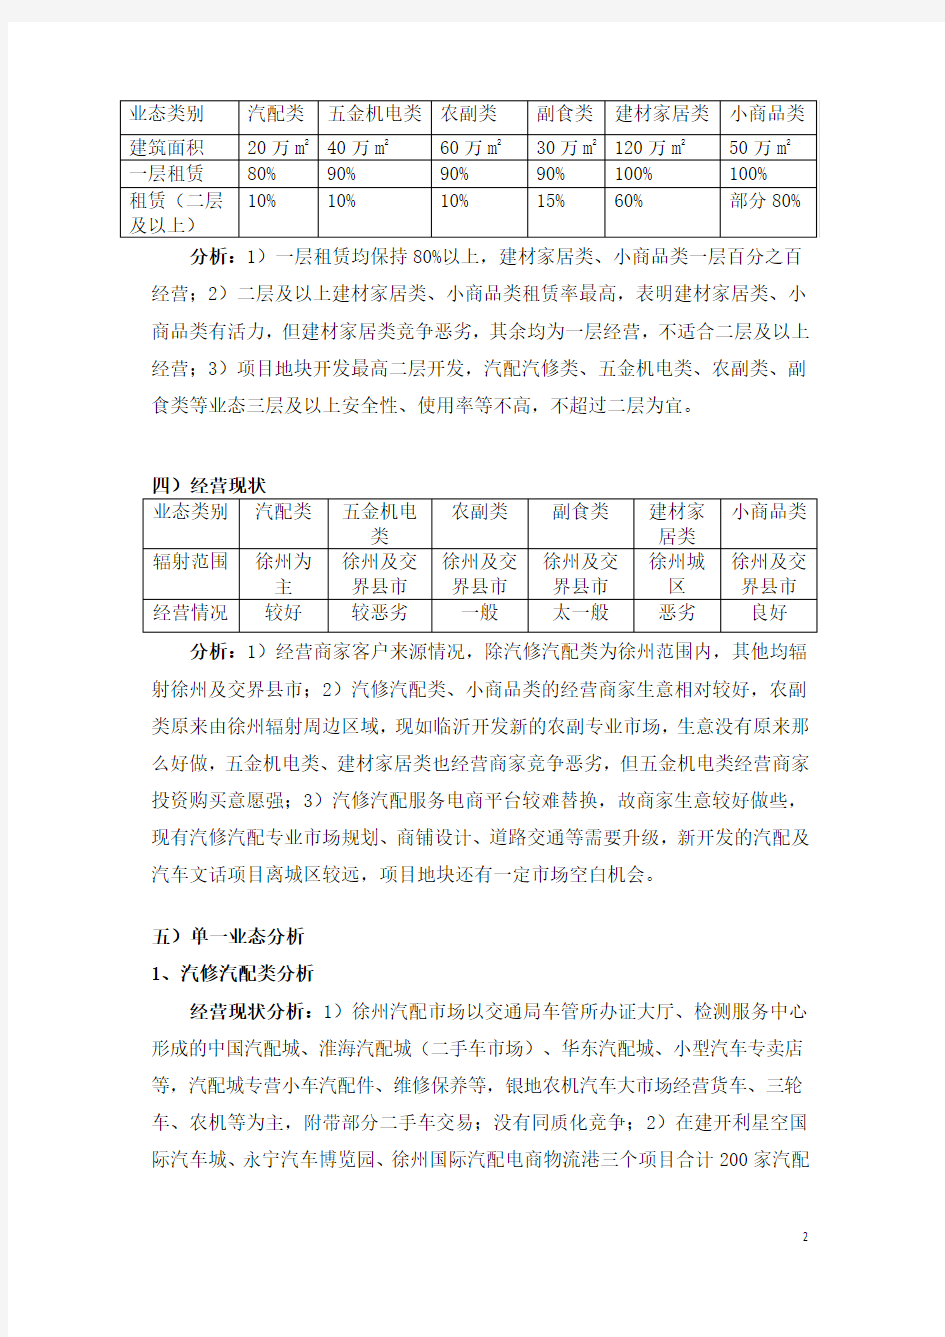 徐州商业专业市场调研报告2016年1009